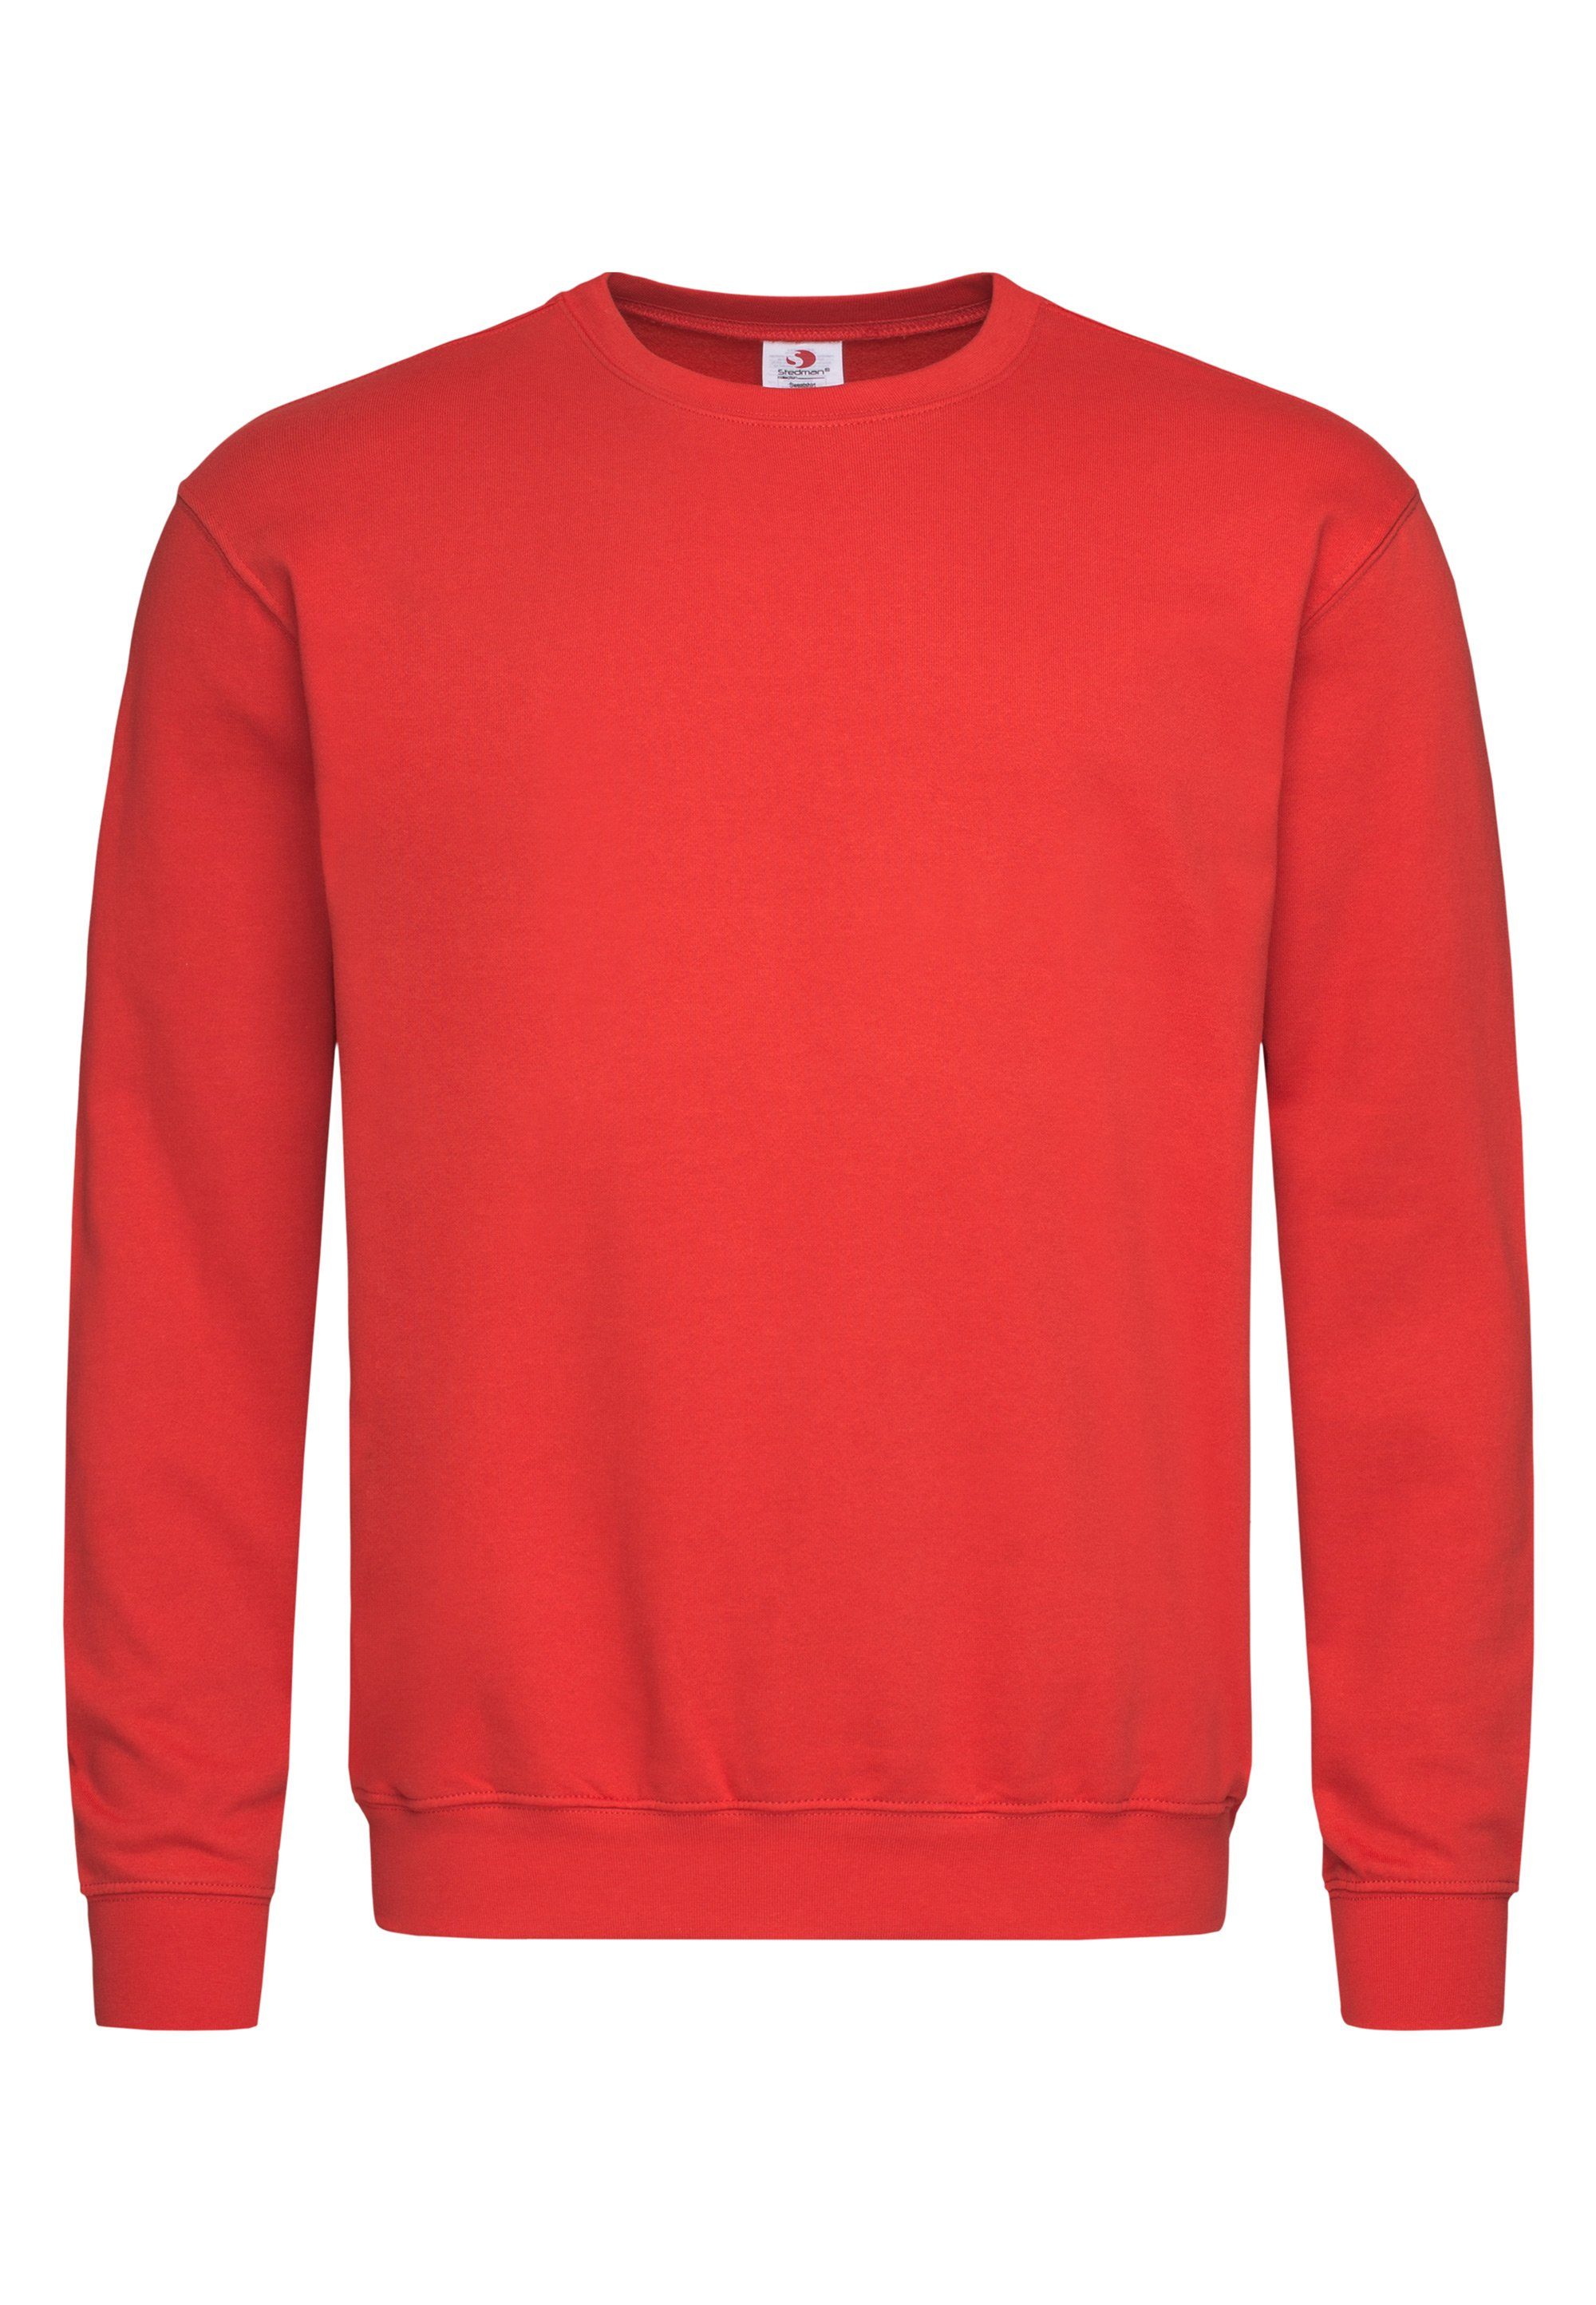 Rote Herren-Pullover online kaufen | OTTO